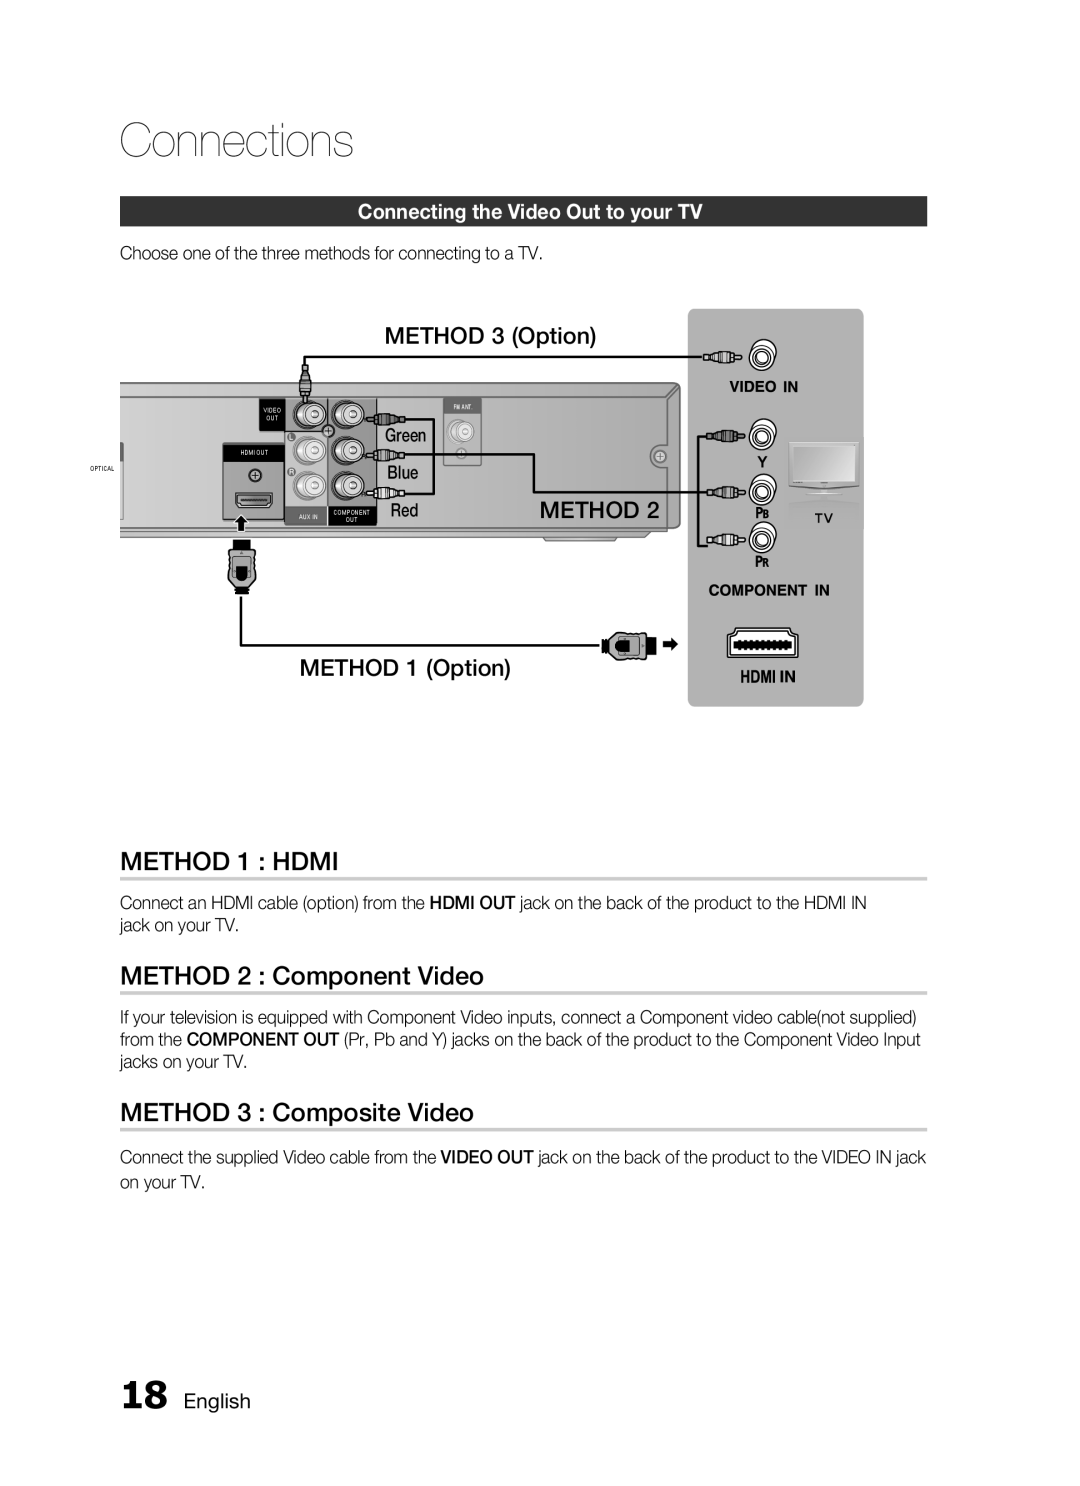 Samsung HT-C445N/HAC manual METHOD 1 HDMI, METHOD 2 Component Video, METHOD 3 Composite Video, METHOD 3 Option, Method 